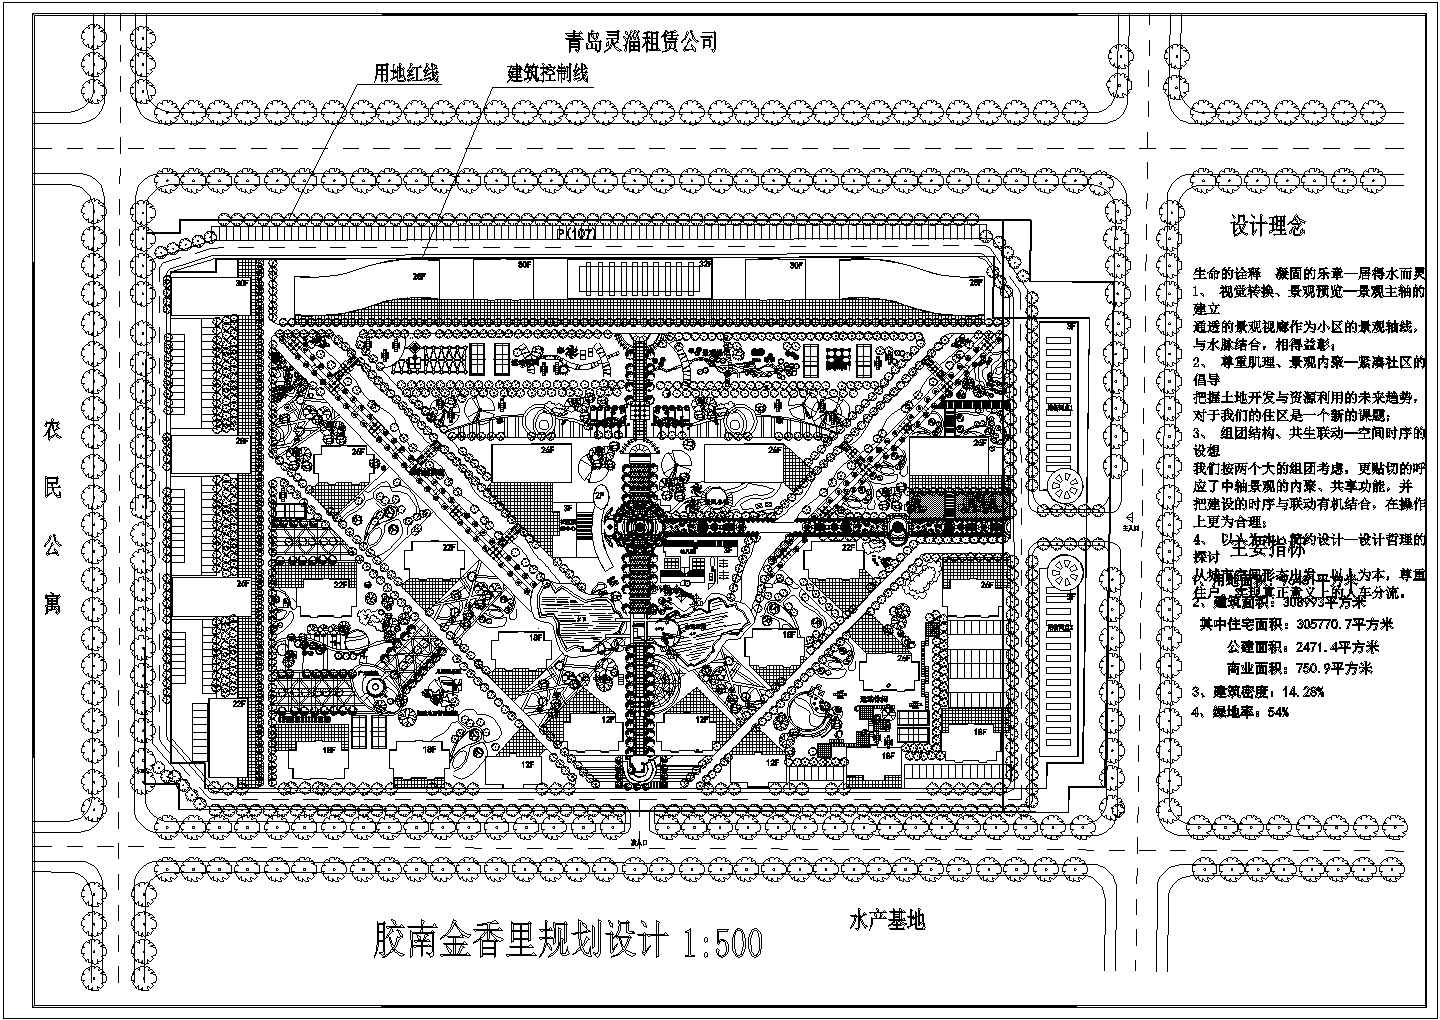 青岛市某公司设计花园居住区景观规划设计图